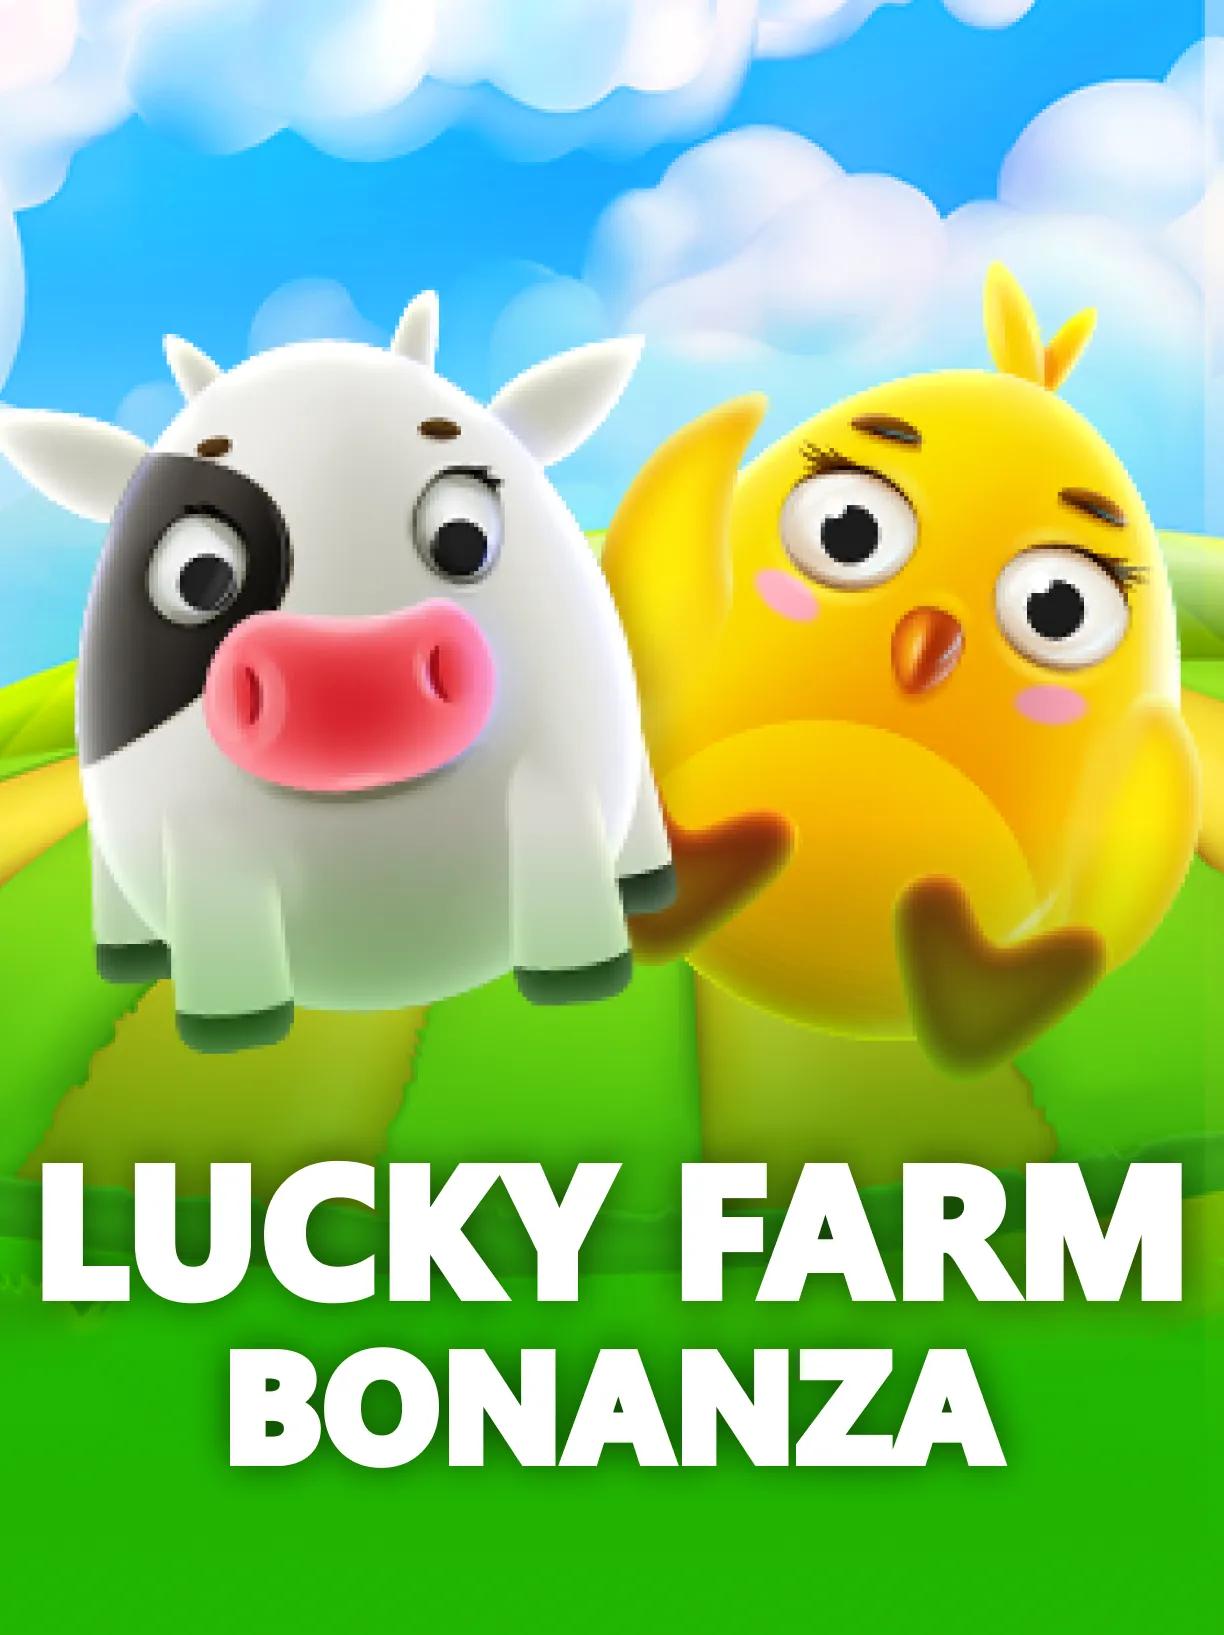 Lucky_Farm_Bonanza_square.webp